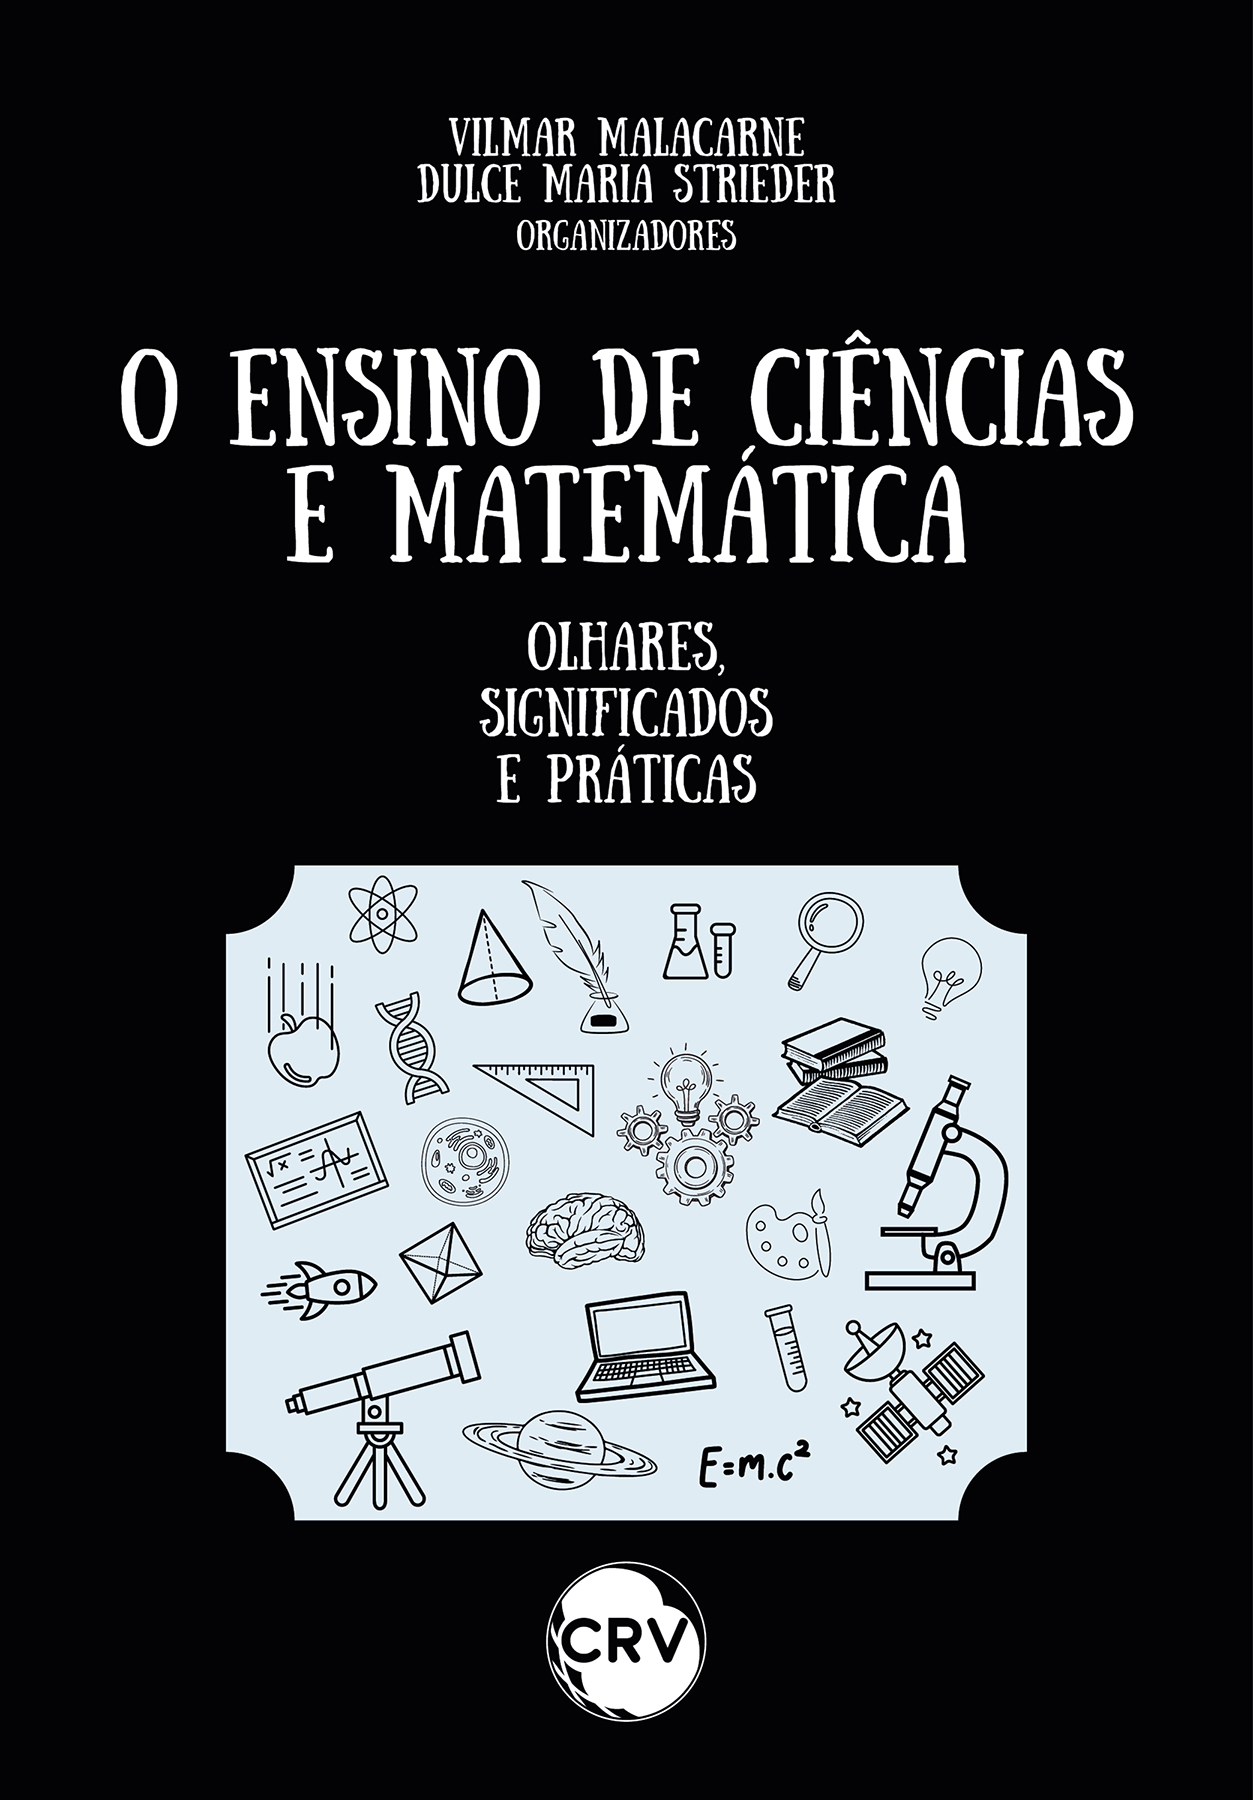 Capa do livro: O ensino de ciências e matemática: <BR>Olhares, significados e práticas